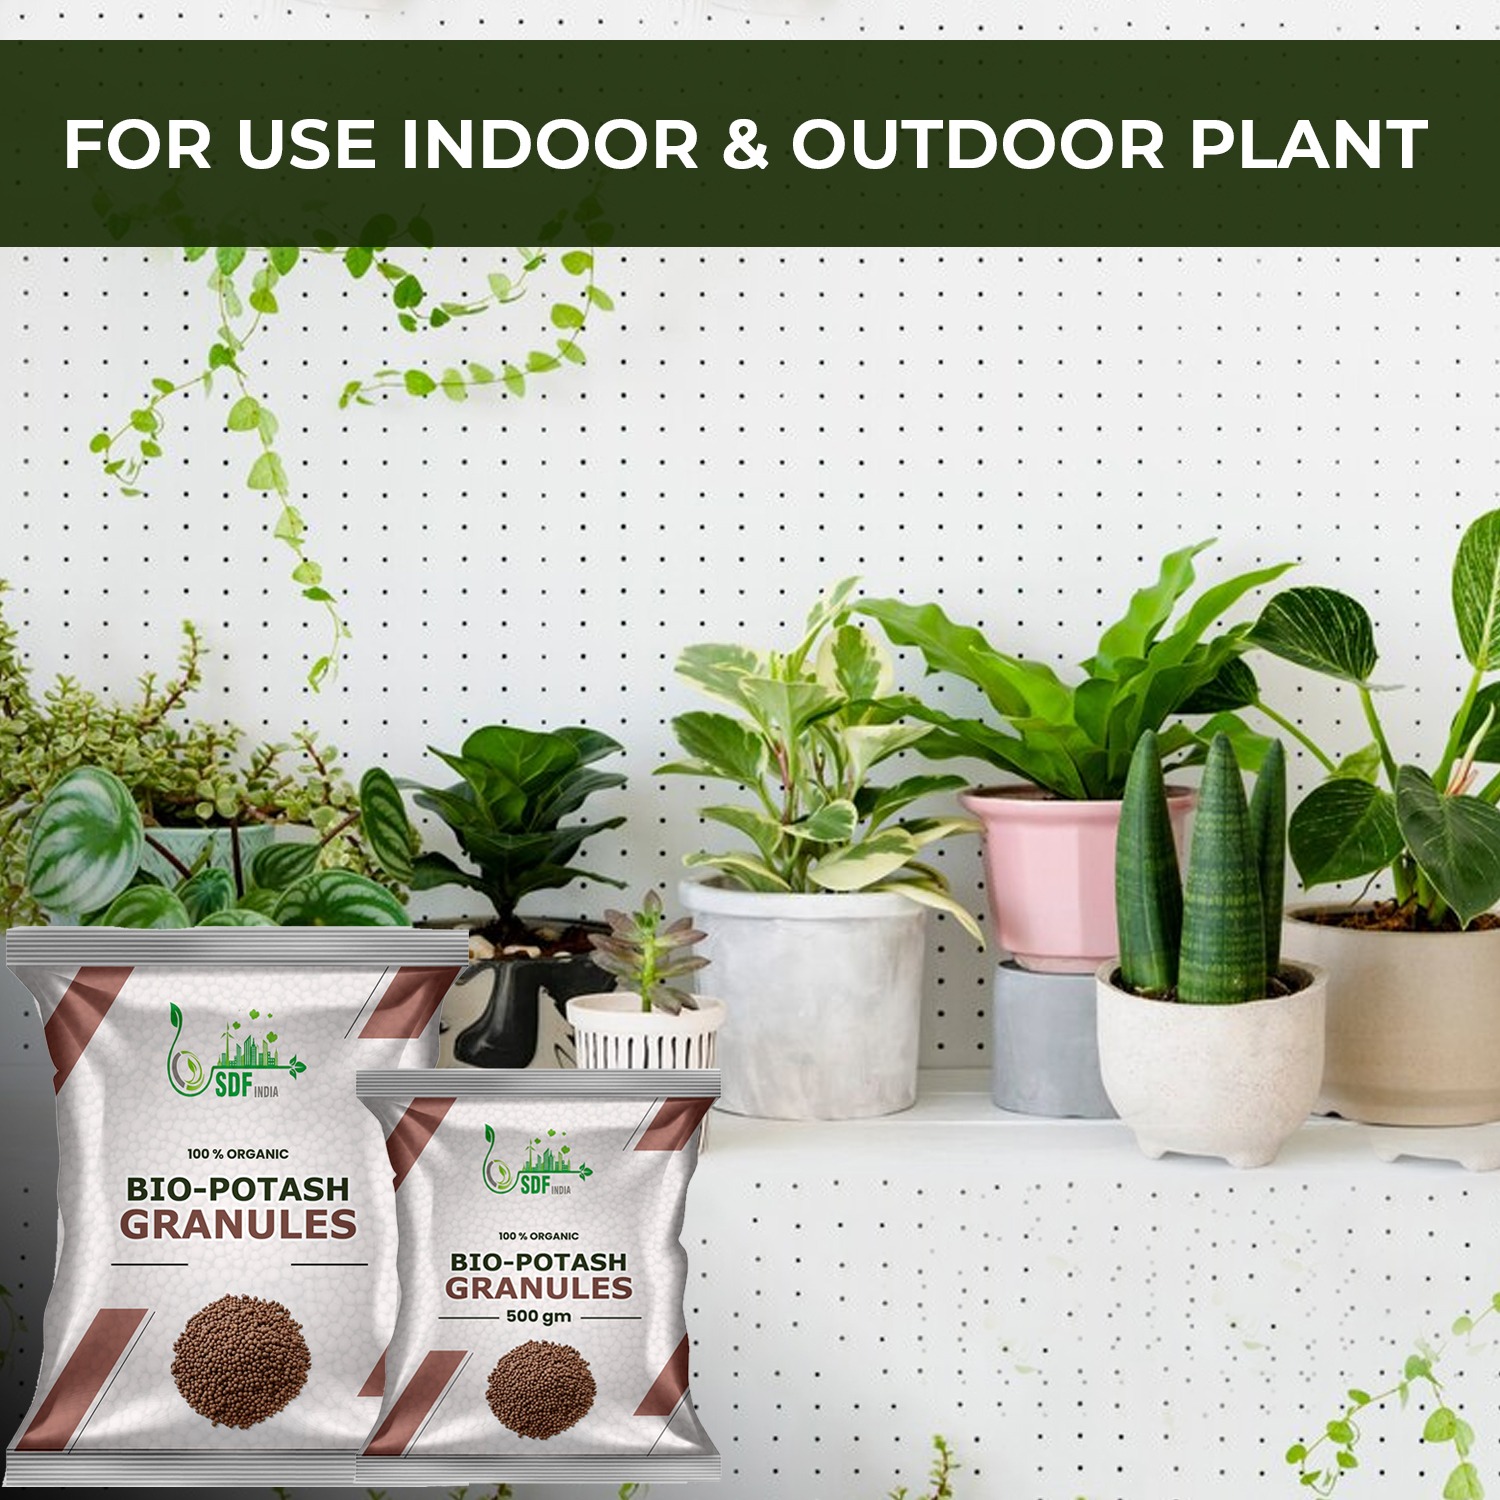 Bio Organic Potash | Essential Fertilizer for Gardening - 50Kg | Granular Potash Fertiliser for Vegetables, Fruits, Garden Flowers, Agriculture Crops, Indoor & Outdoor Home Plants